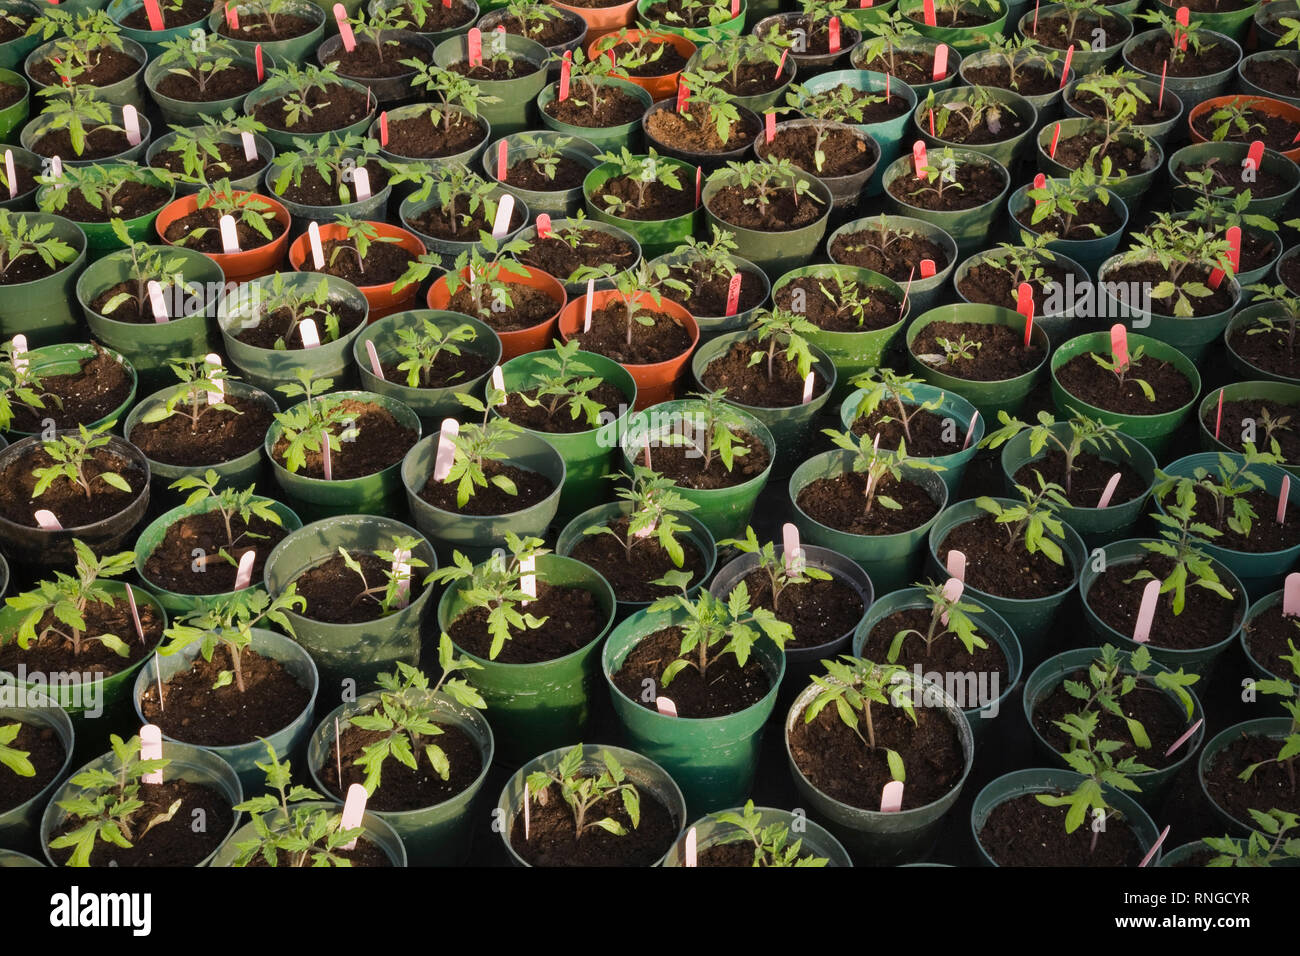 Les jeunes plantes sont cultivées de façon organique dans des pots en plastique vert dans une serre commerciale. Banque D'Images